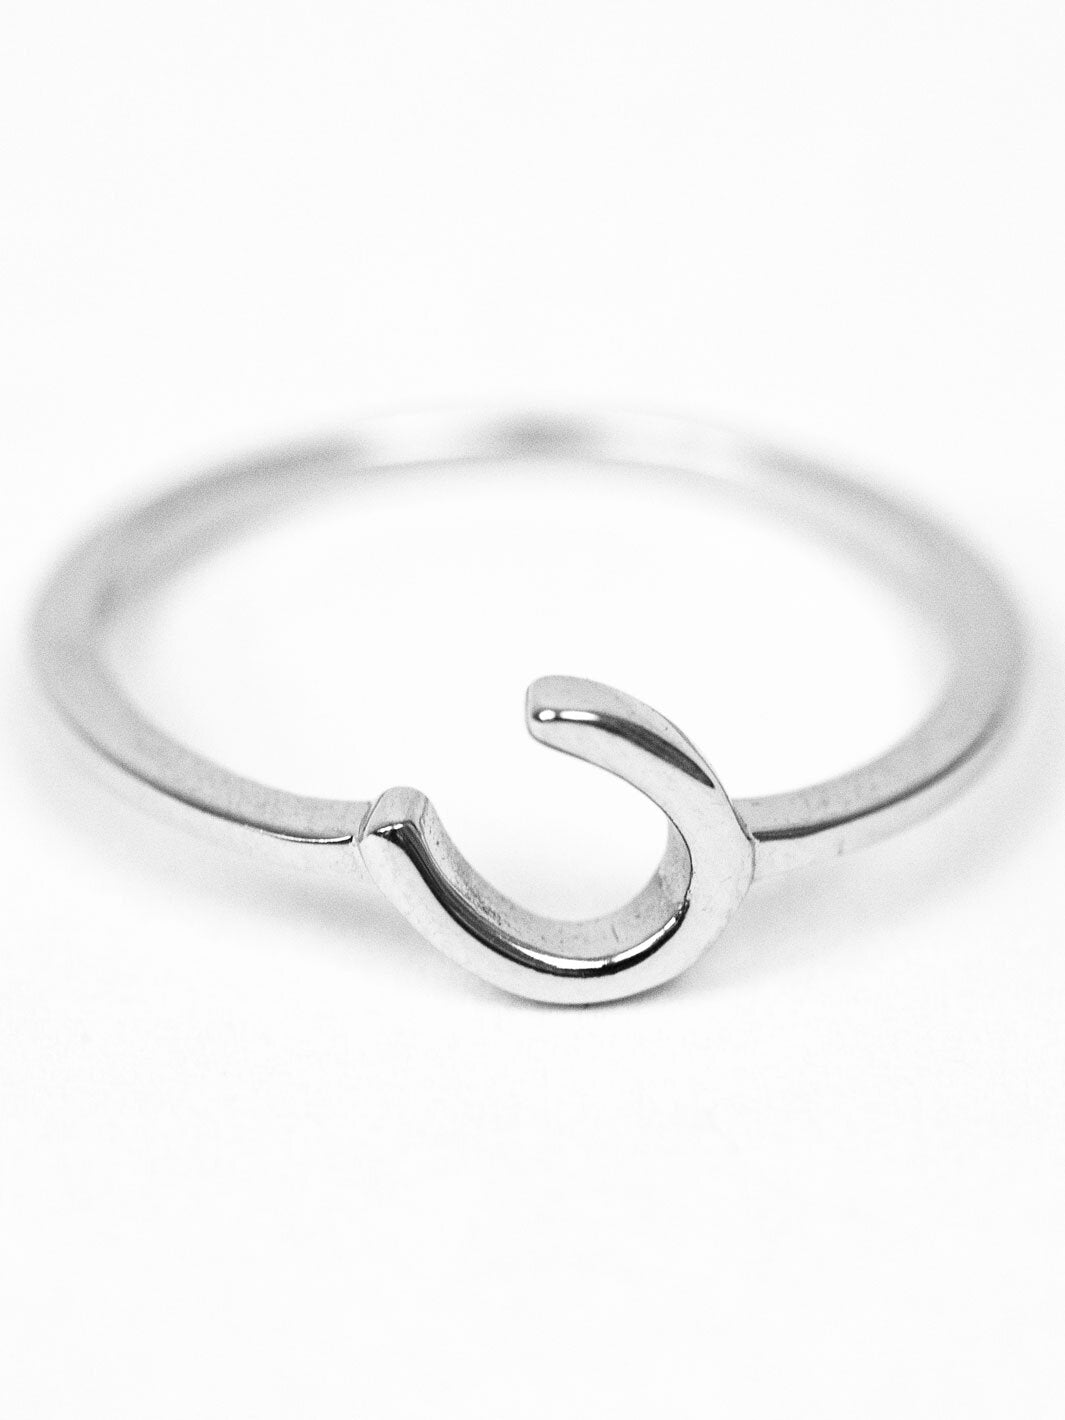 angled horseshoe ring